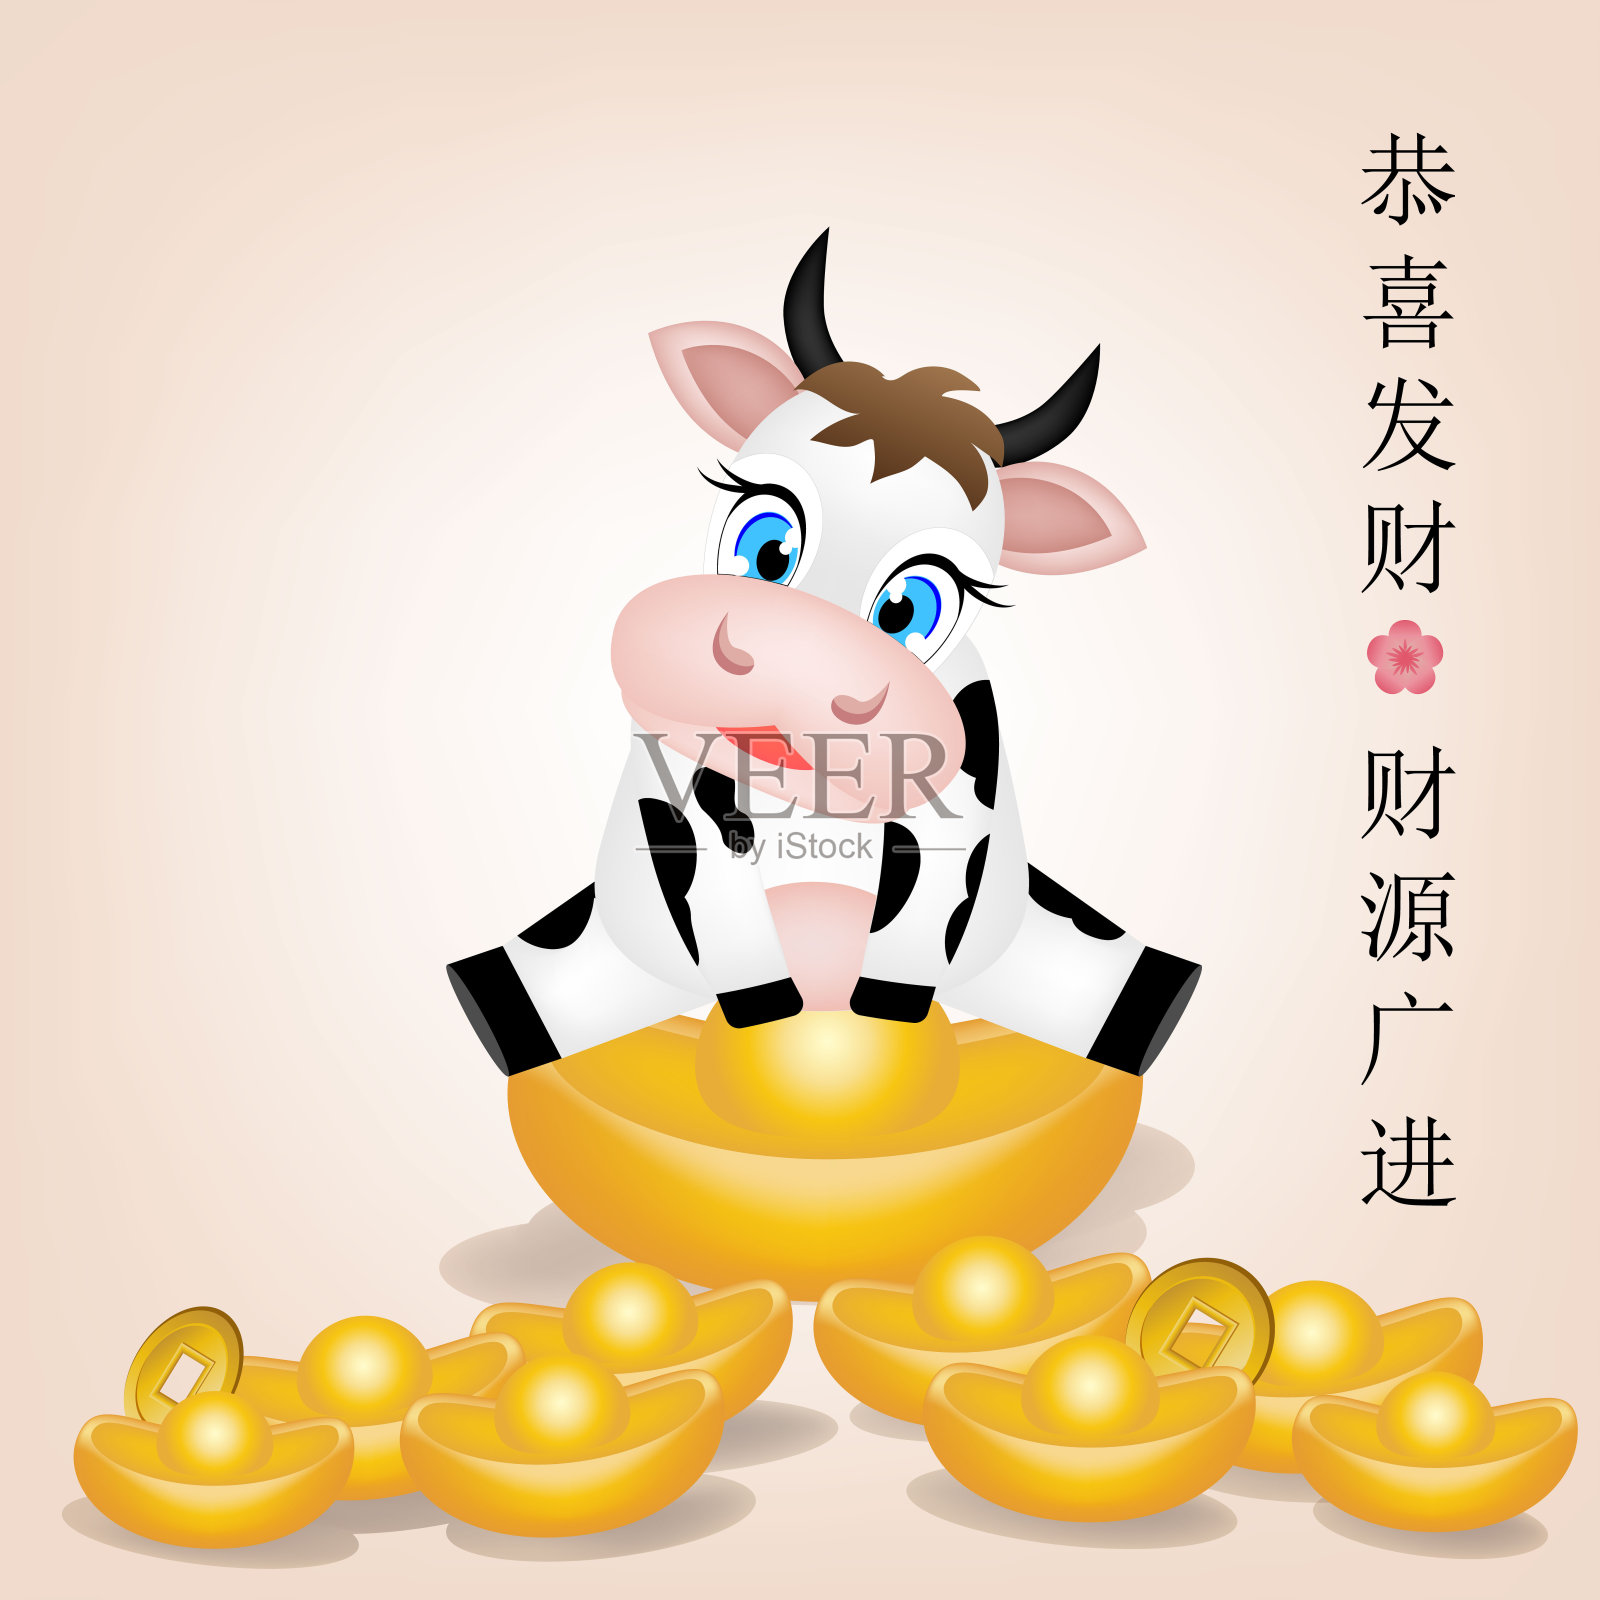 中国新年牛年2021年。红纸剪牛字。花和亚洲元素与工艺风格的背景。(中文翻译:2021年春节快乐。年的牛)插画图片素材